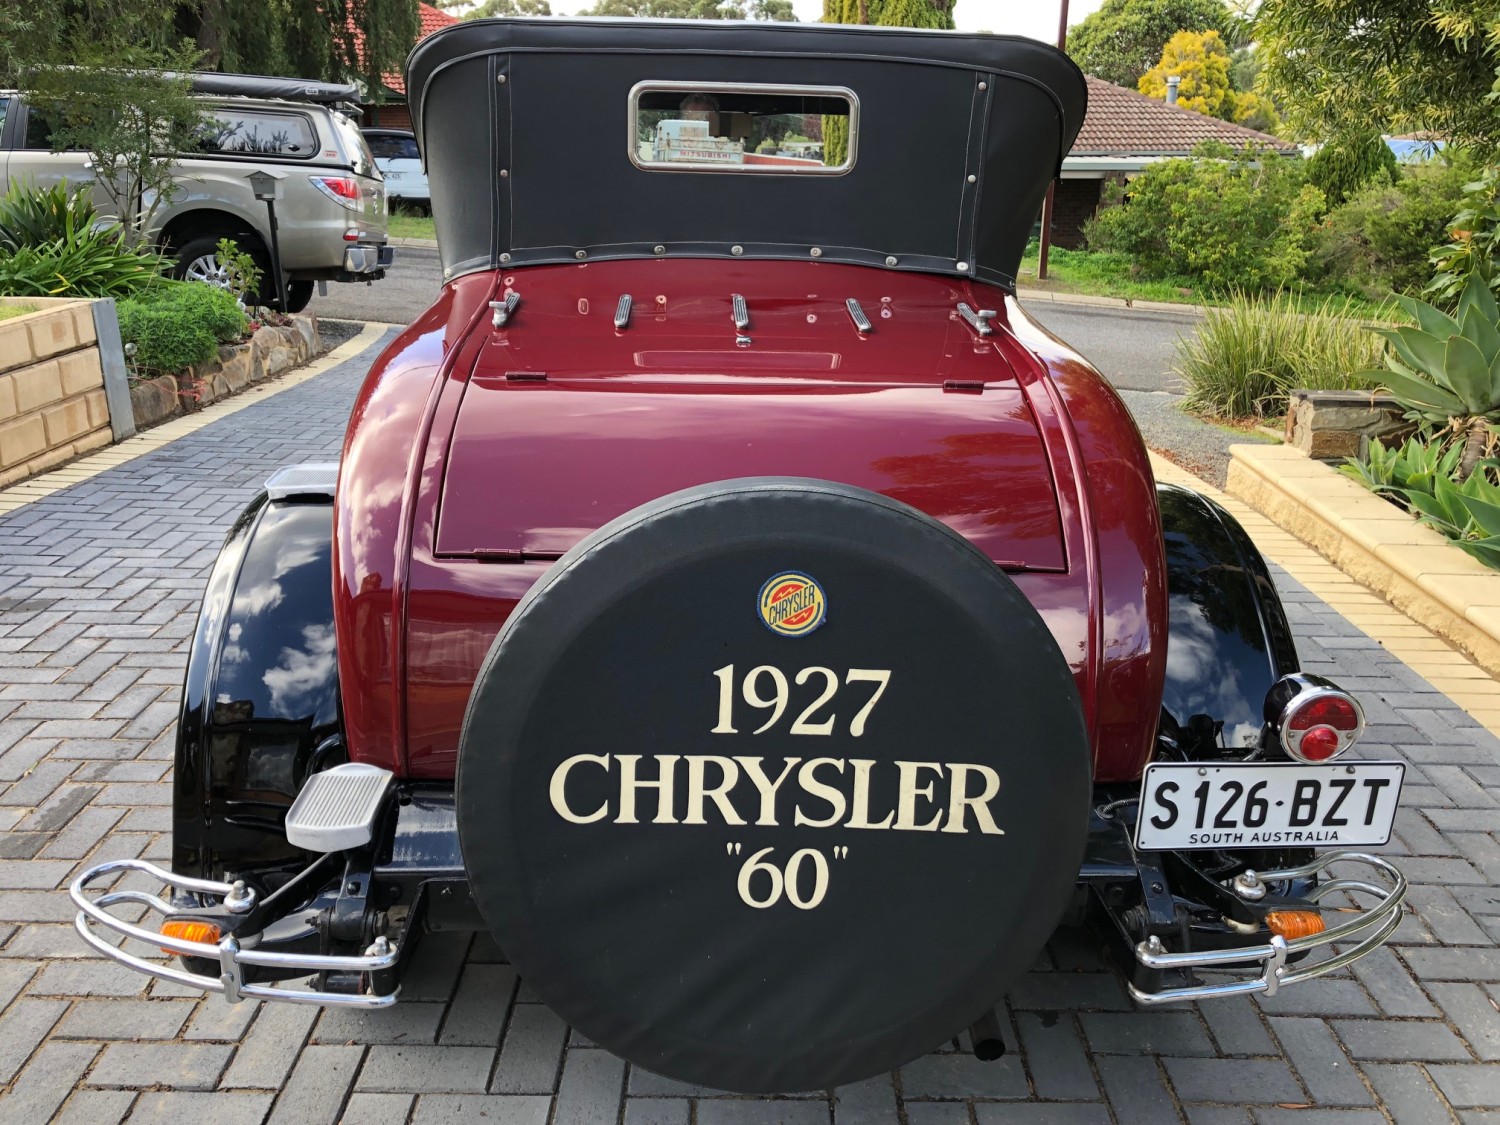 1927 Chrysler Chrysler 60 Roadster